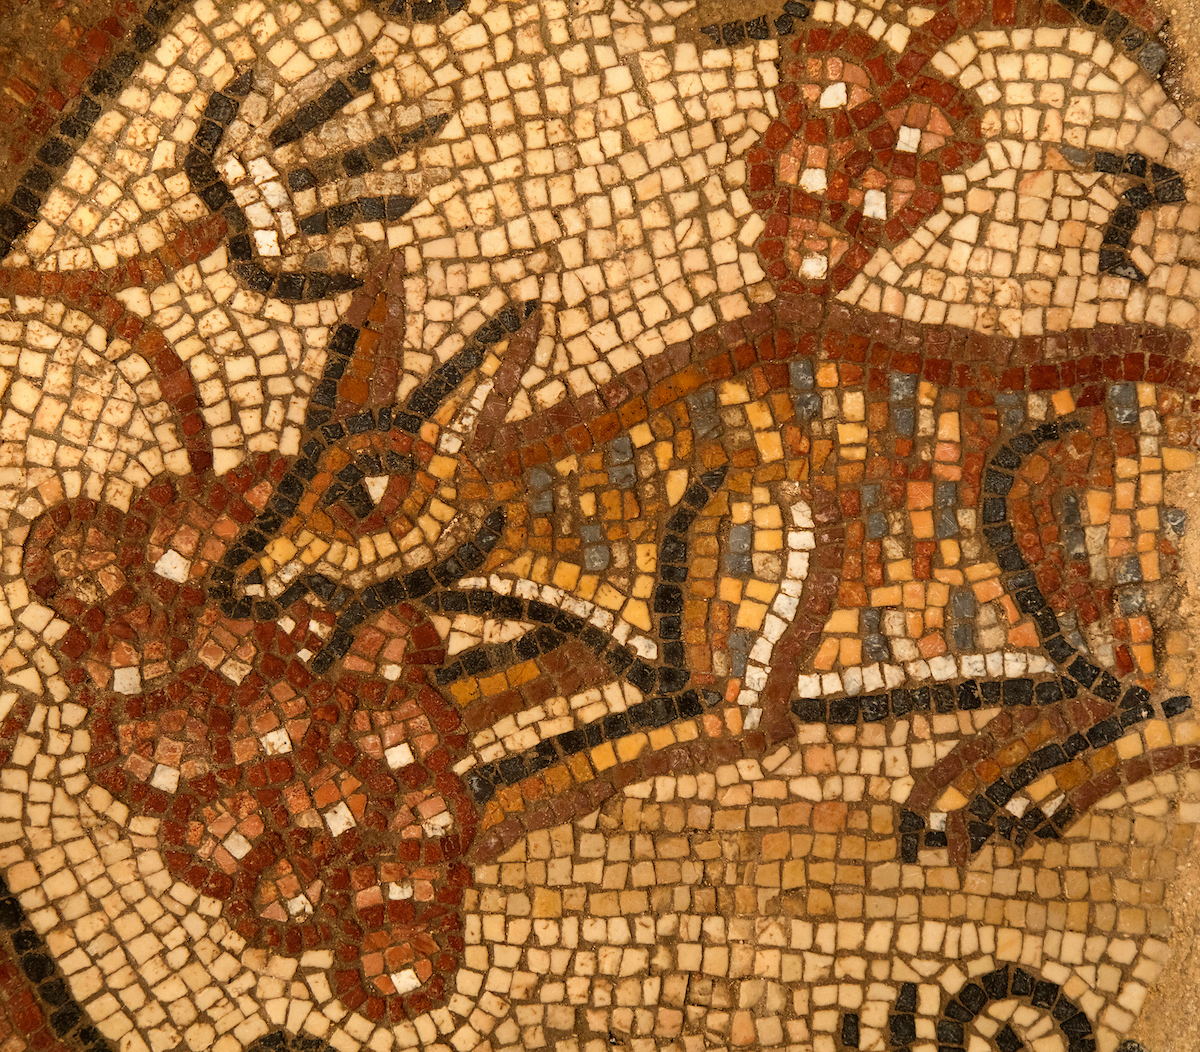 Fox eating grapes mosaic in Huqoq synagogue mosaic. Photo by Jim Haberman